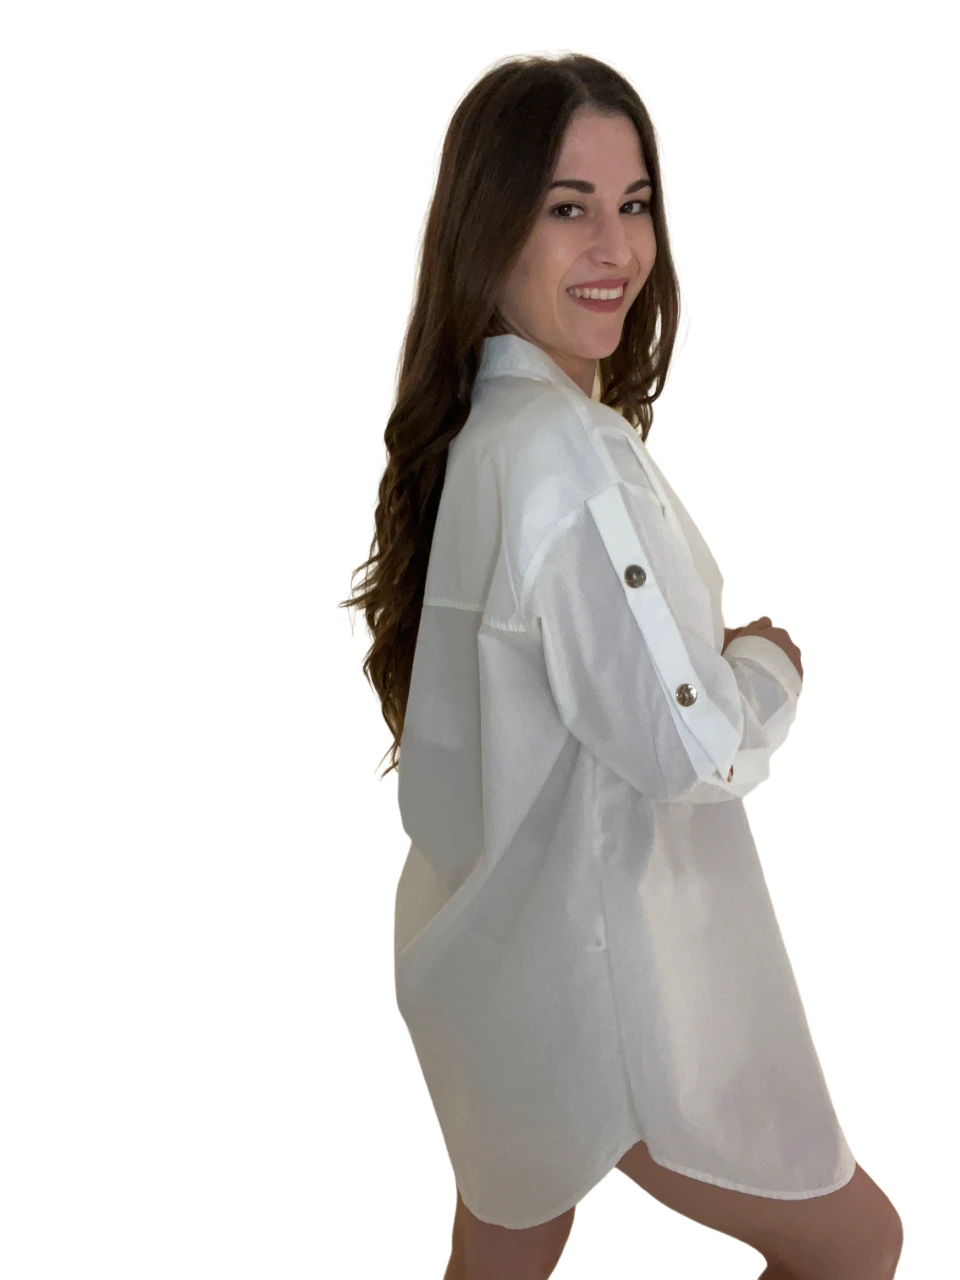 Γυναικείο μακρύ πουκάμισο άσπρο